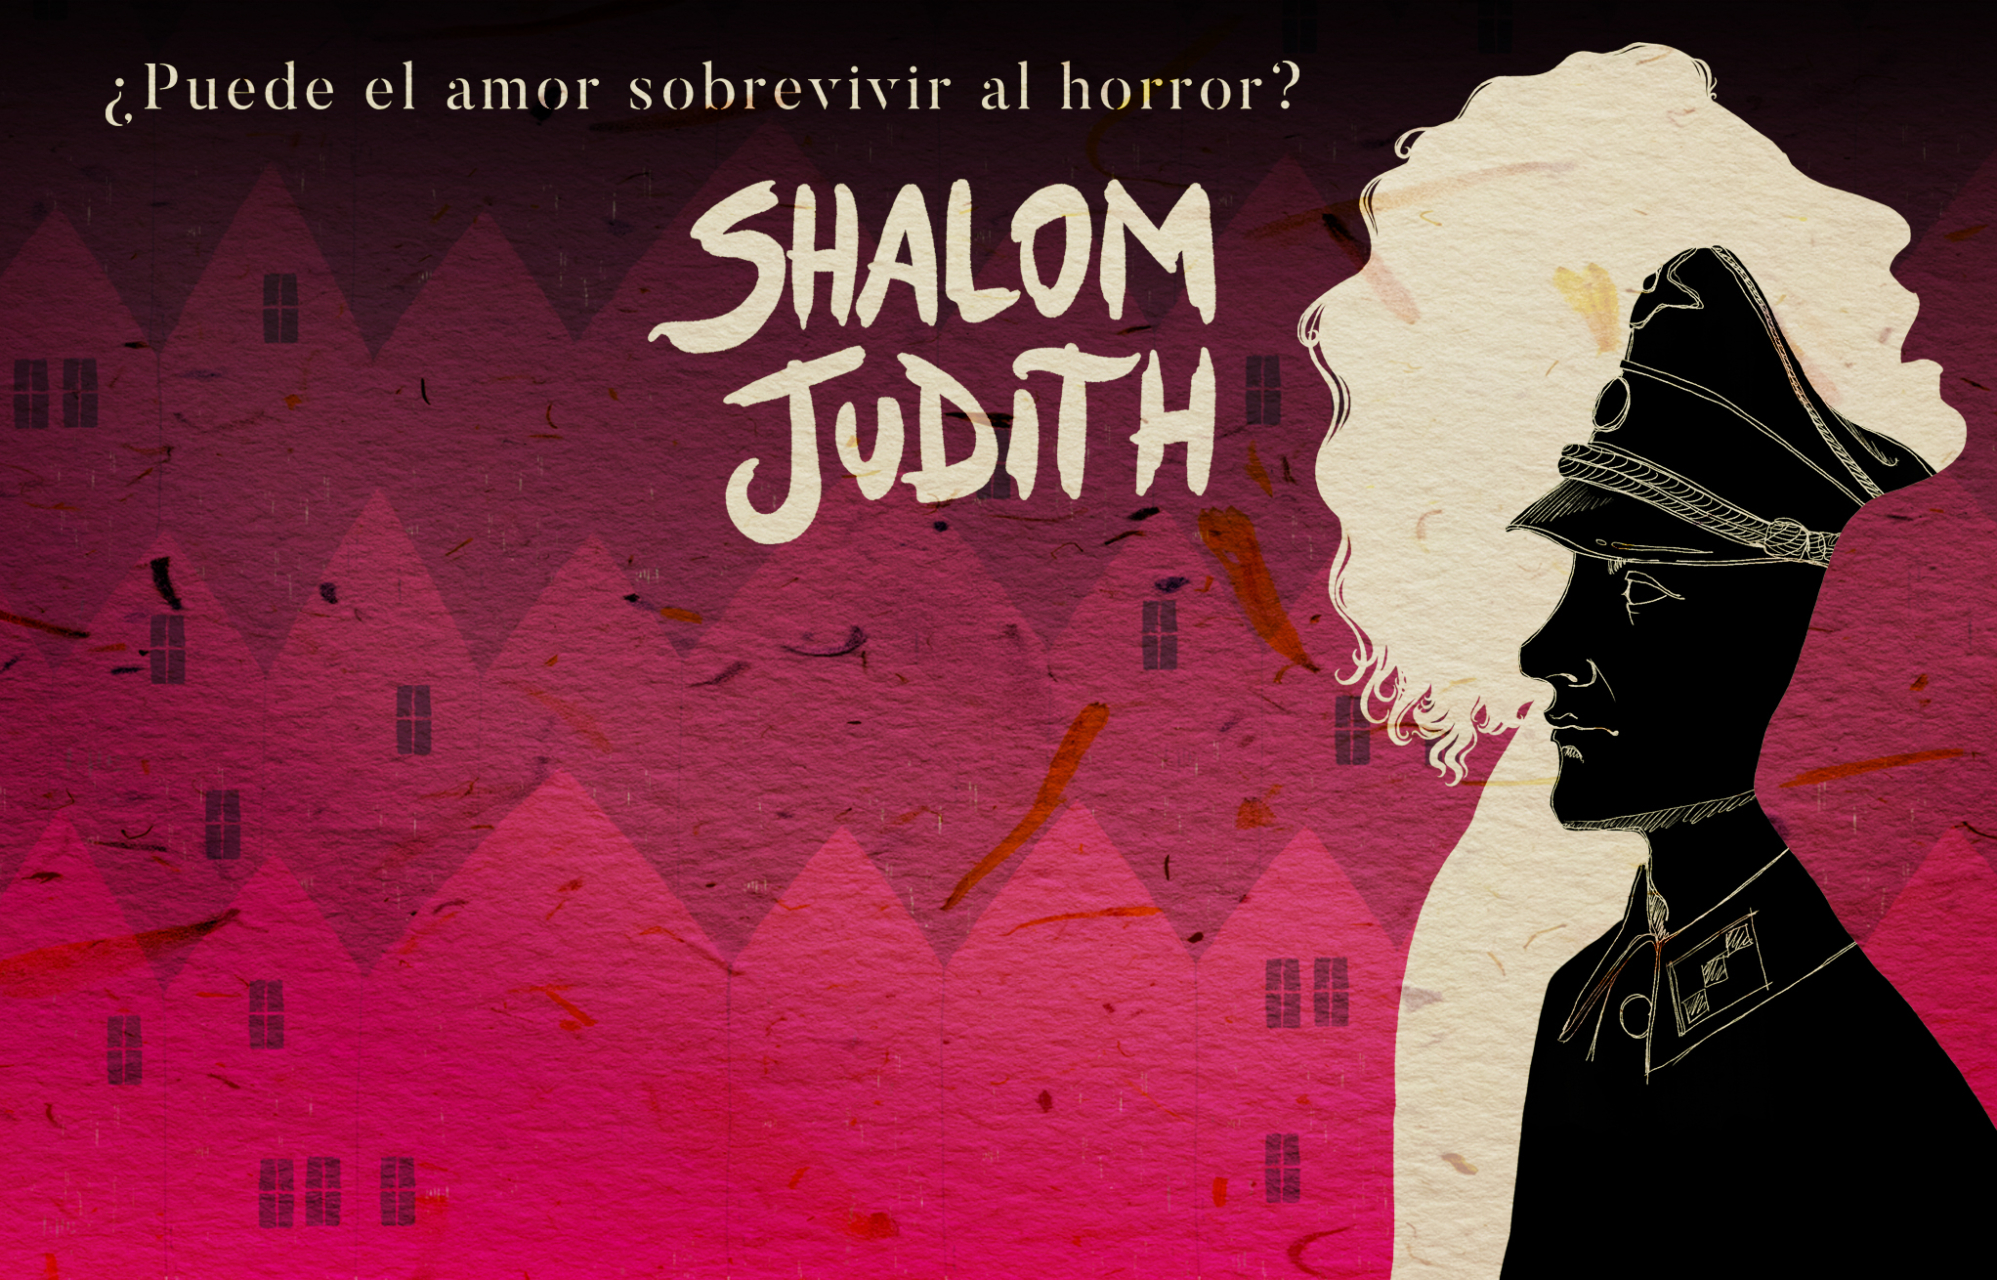 Shalom Judith alejandra jimenez cascon